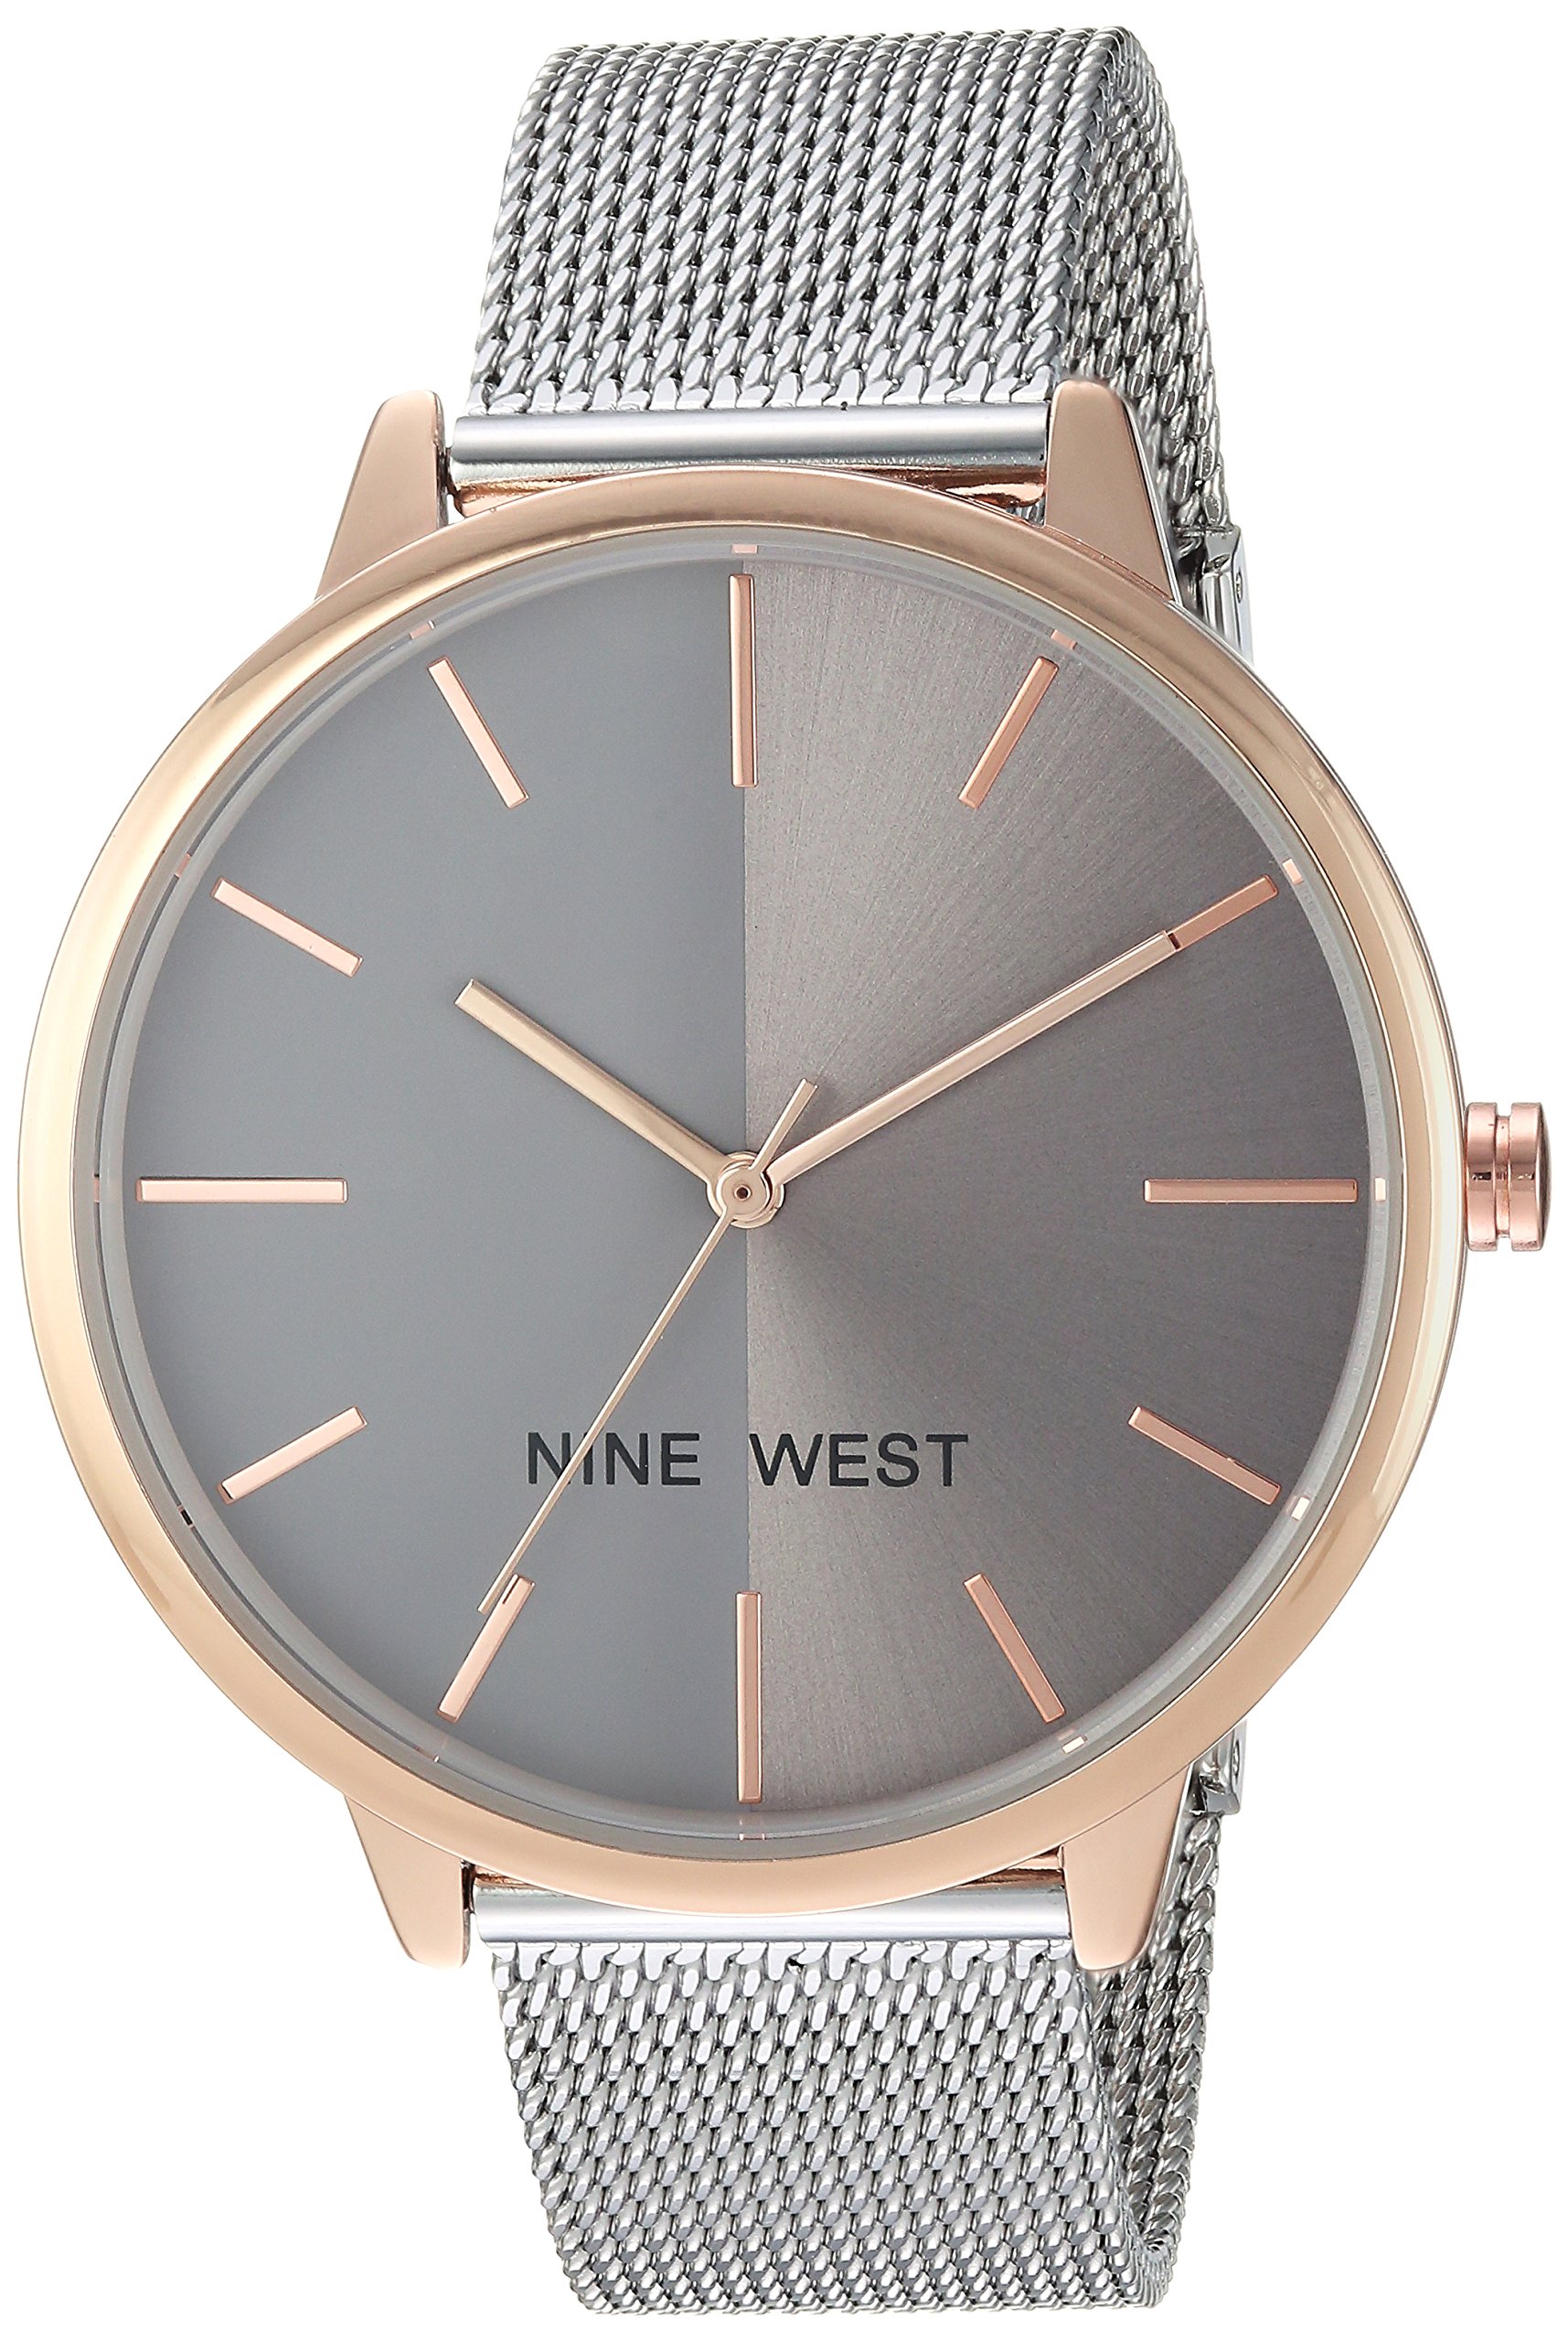 Nine West Women's Mesh Bracelet Watch